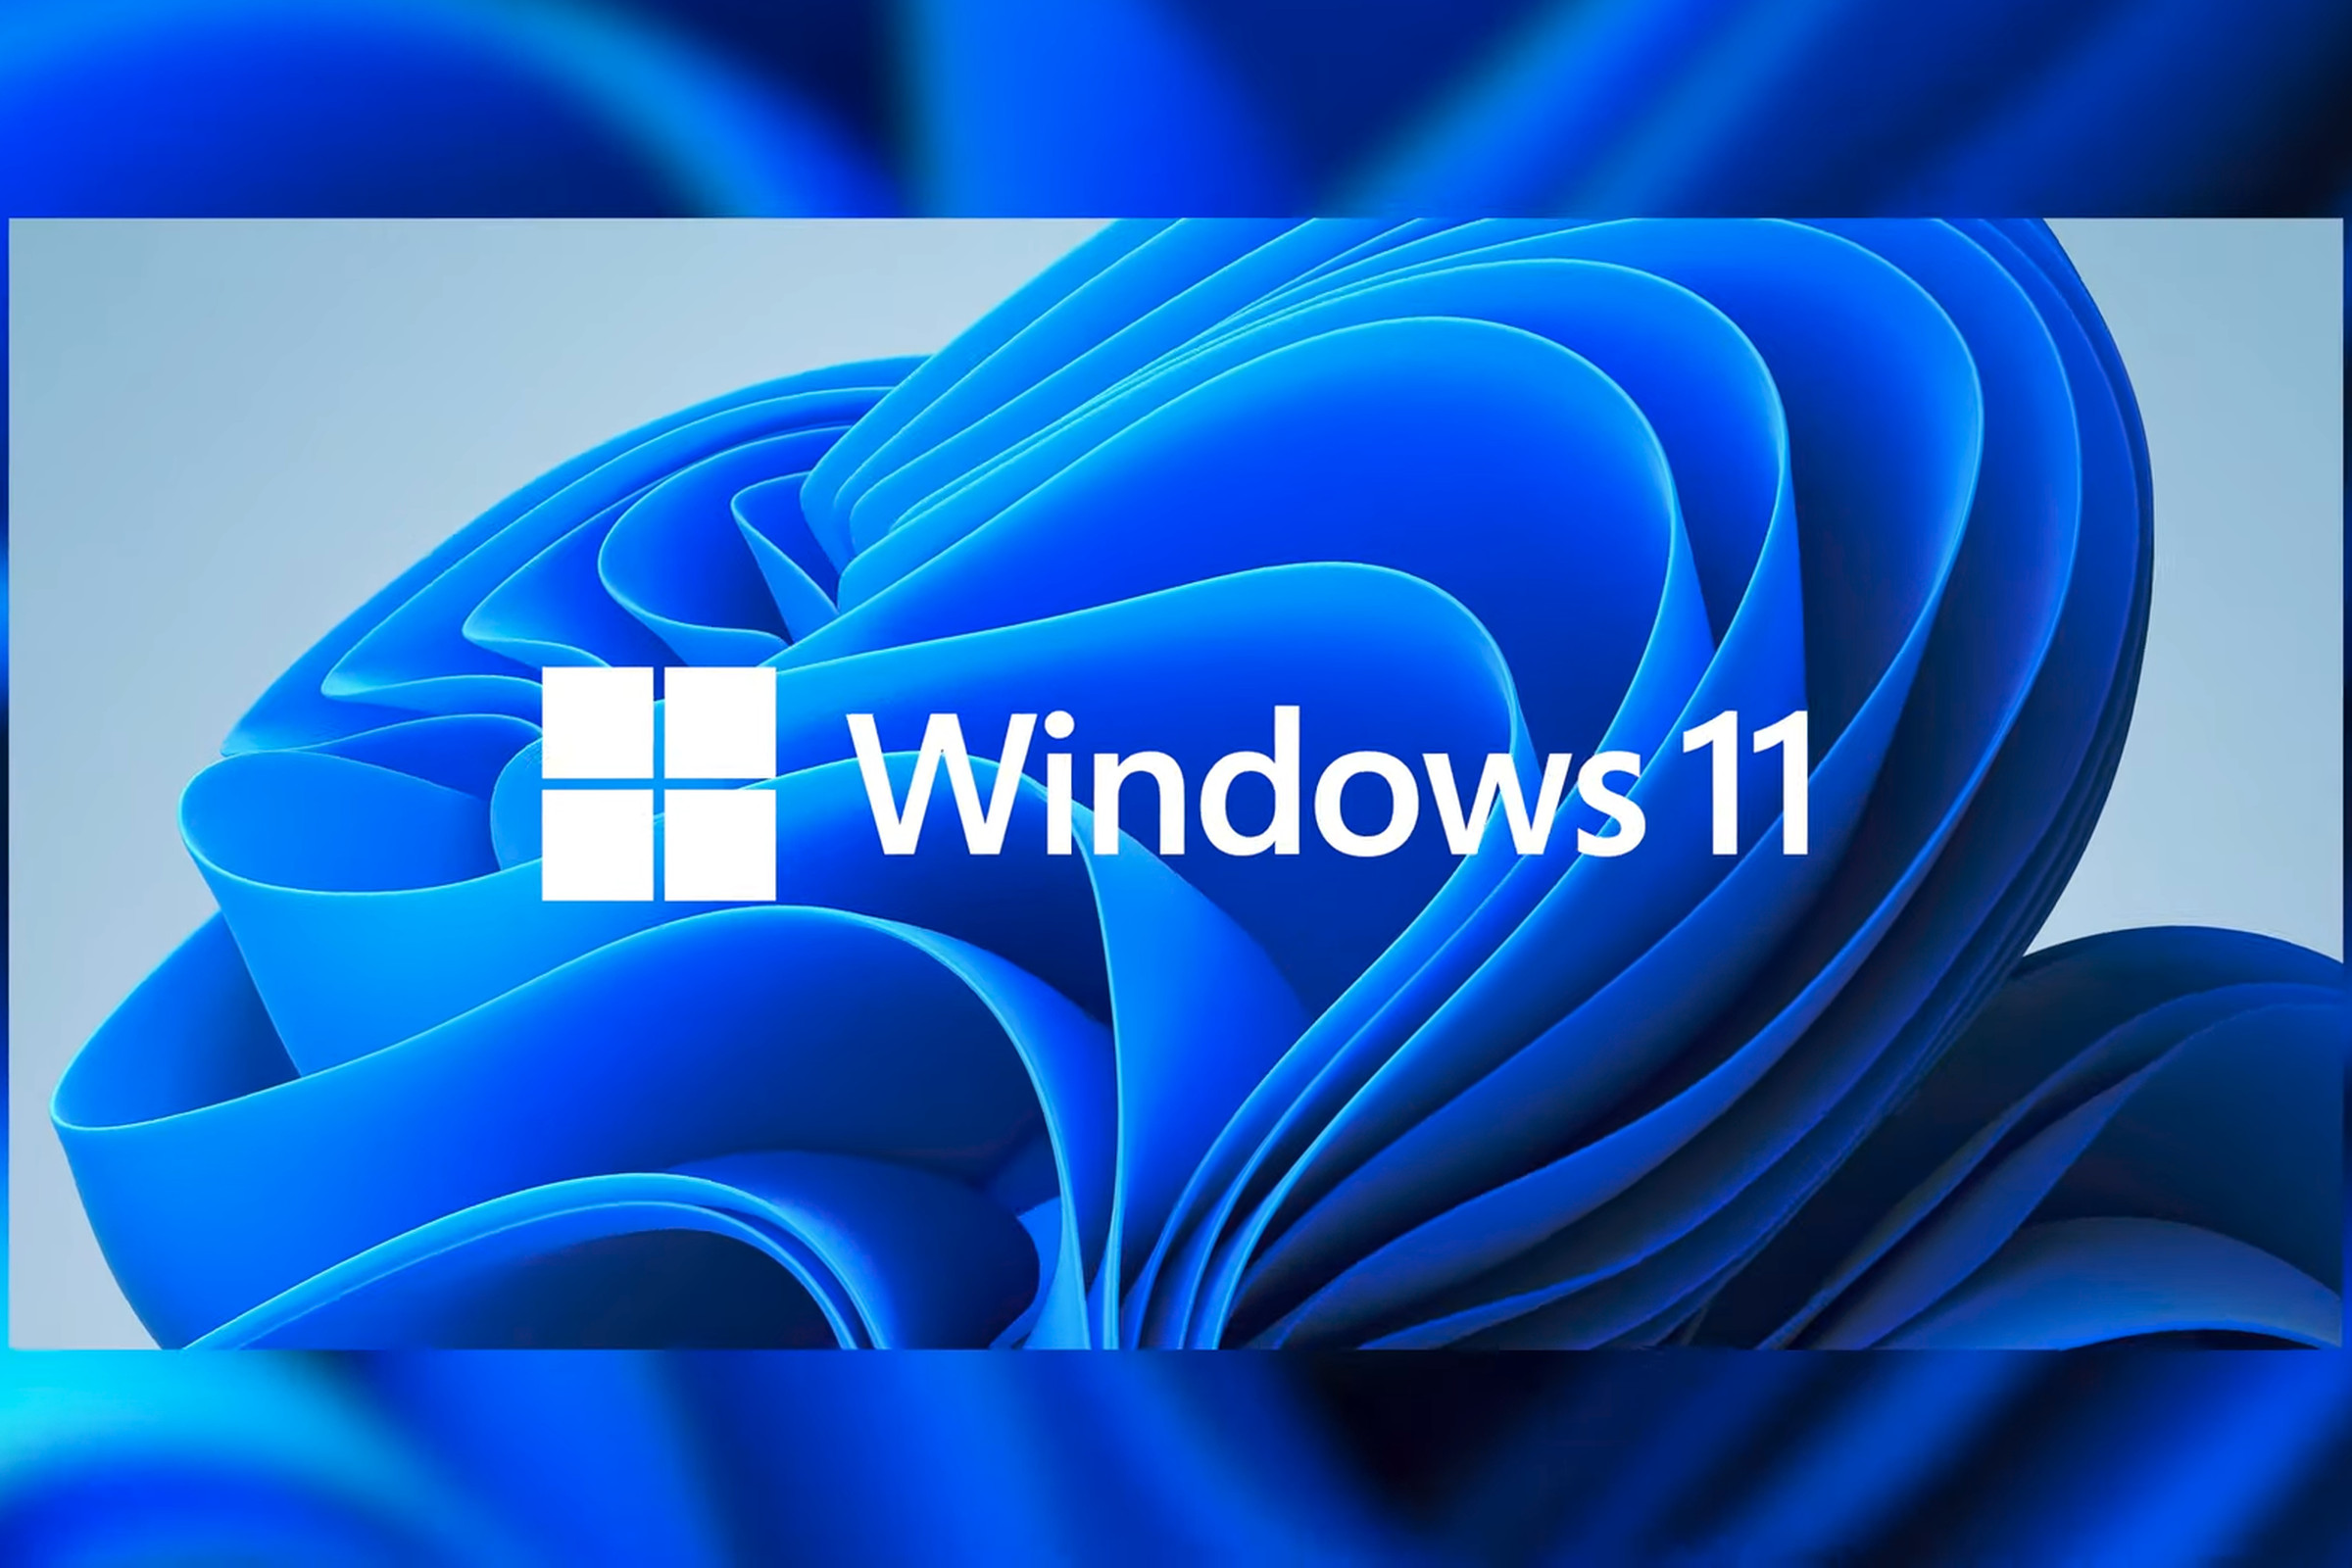 Microsoft announced Windows 11 on Thursday.